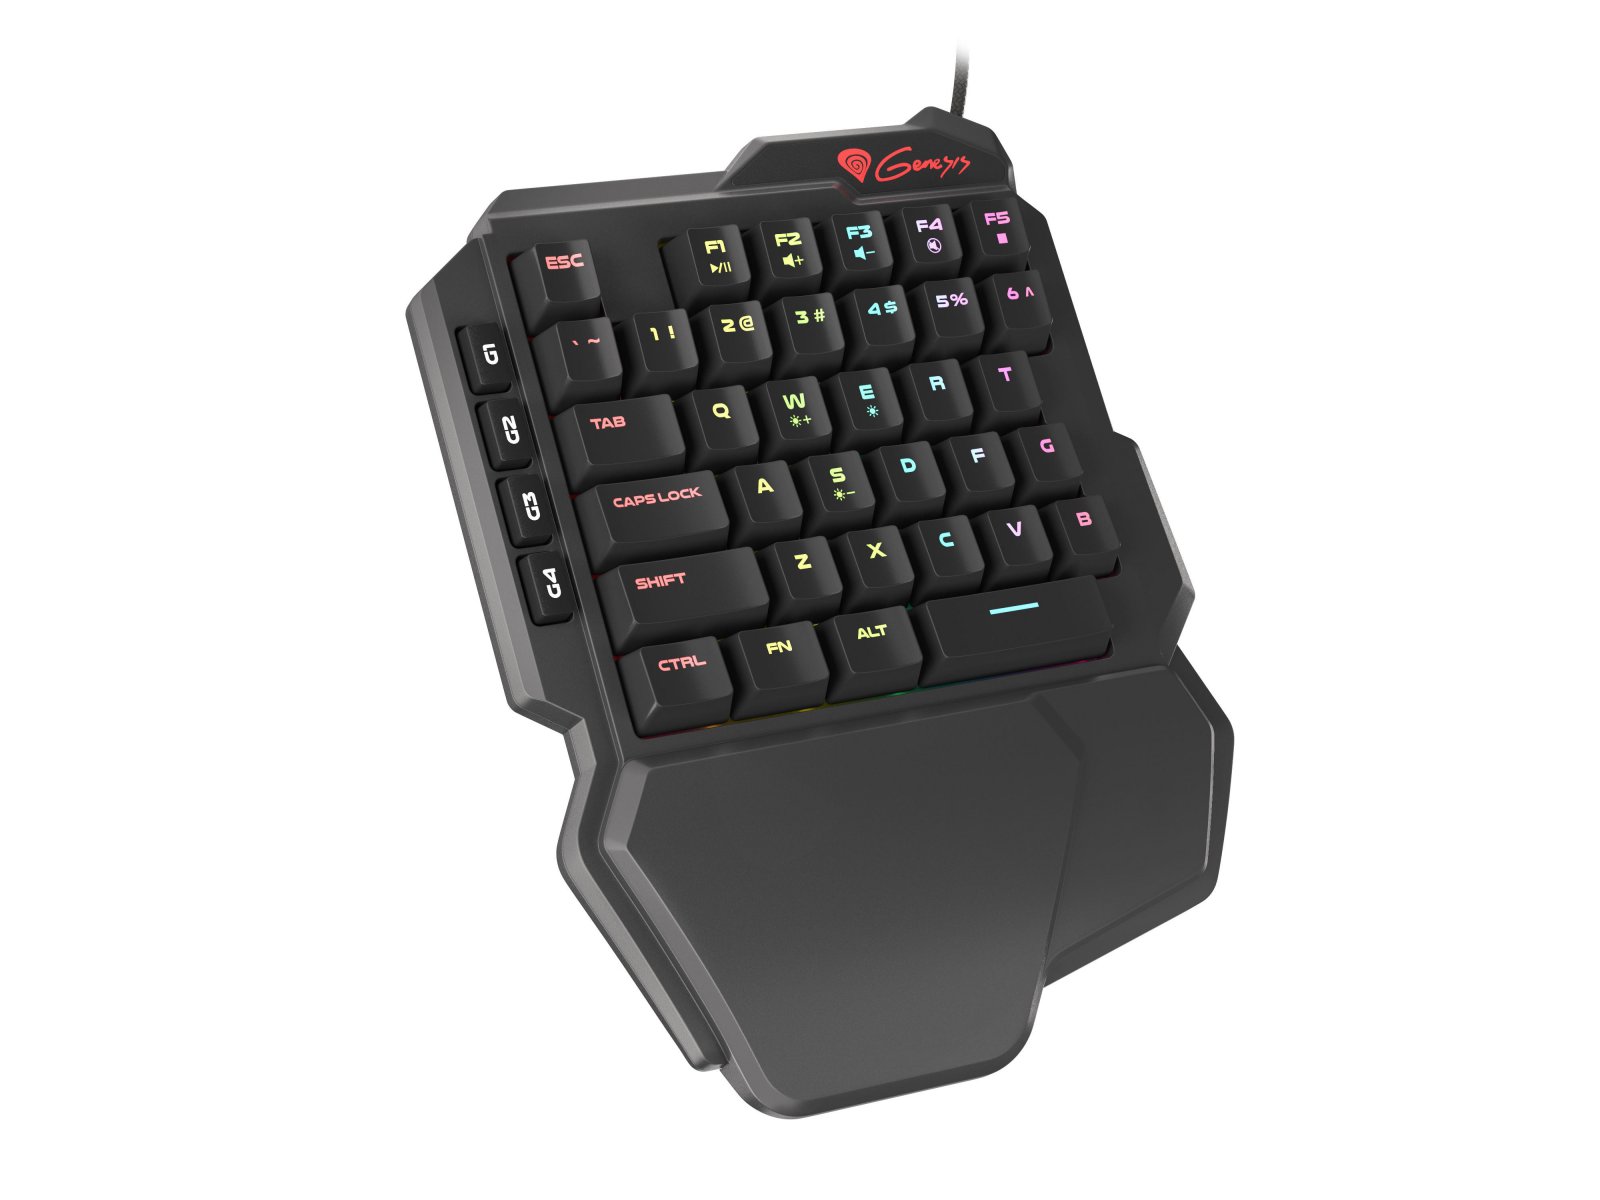 Natec Genesis gaming keyboard Thor 100 keypad RGB backlight NKG-1319